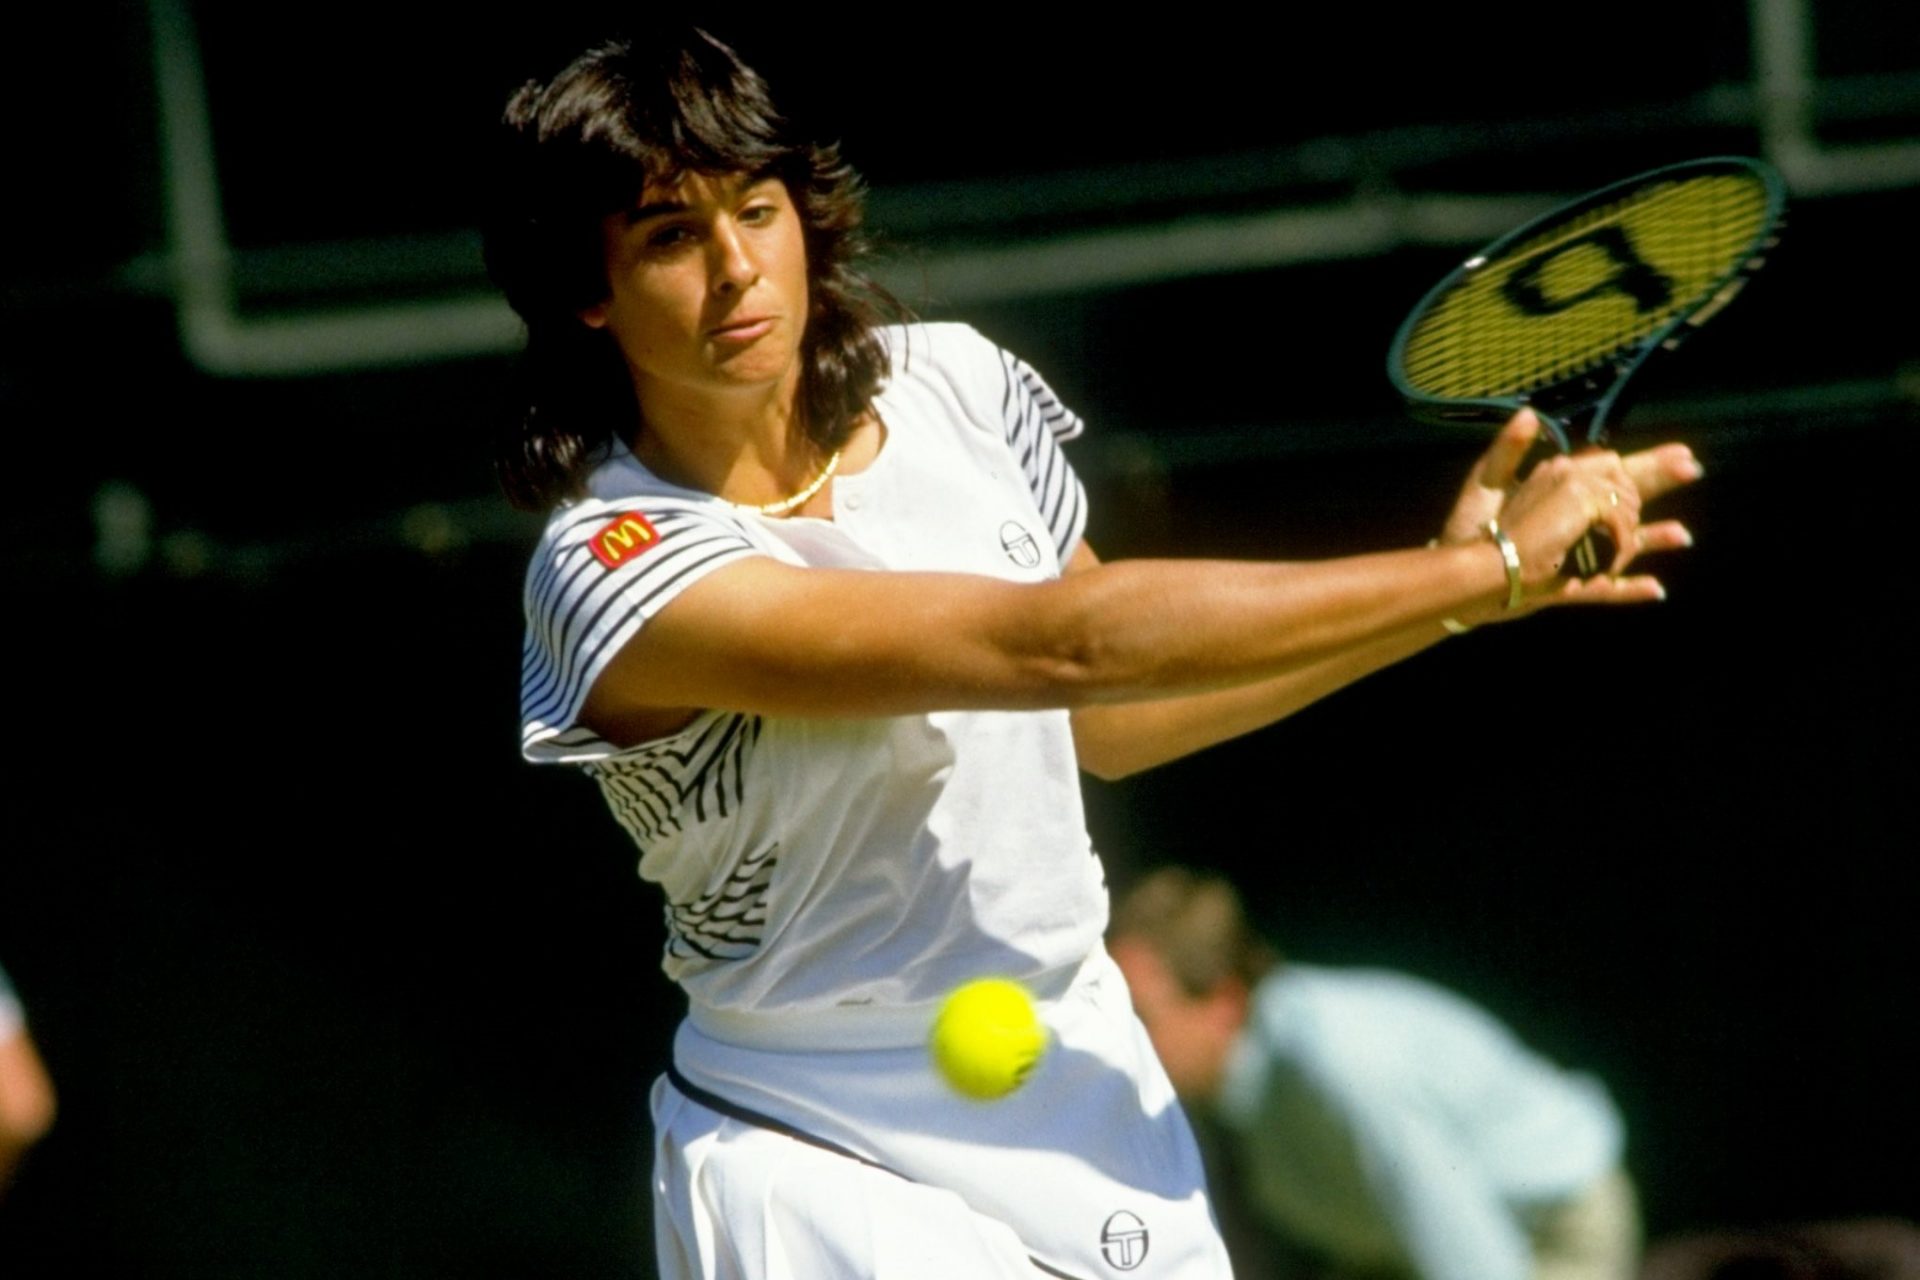 1986: Wimbledon